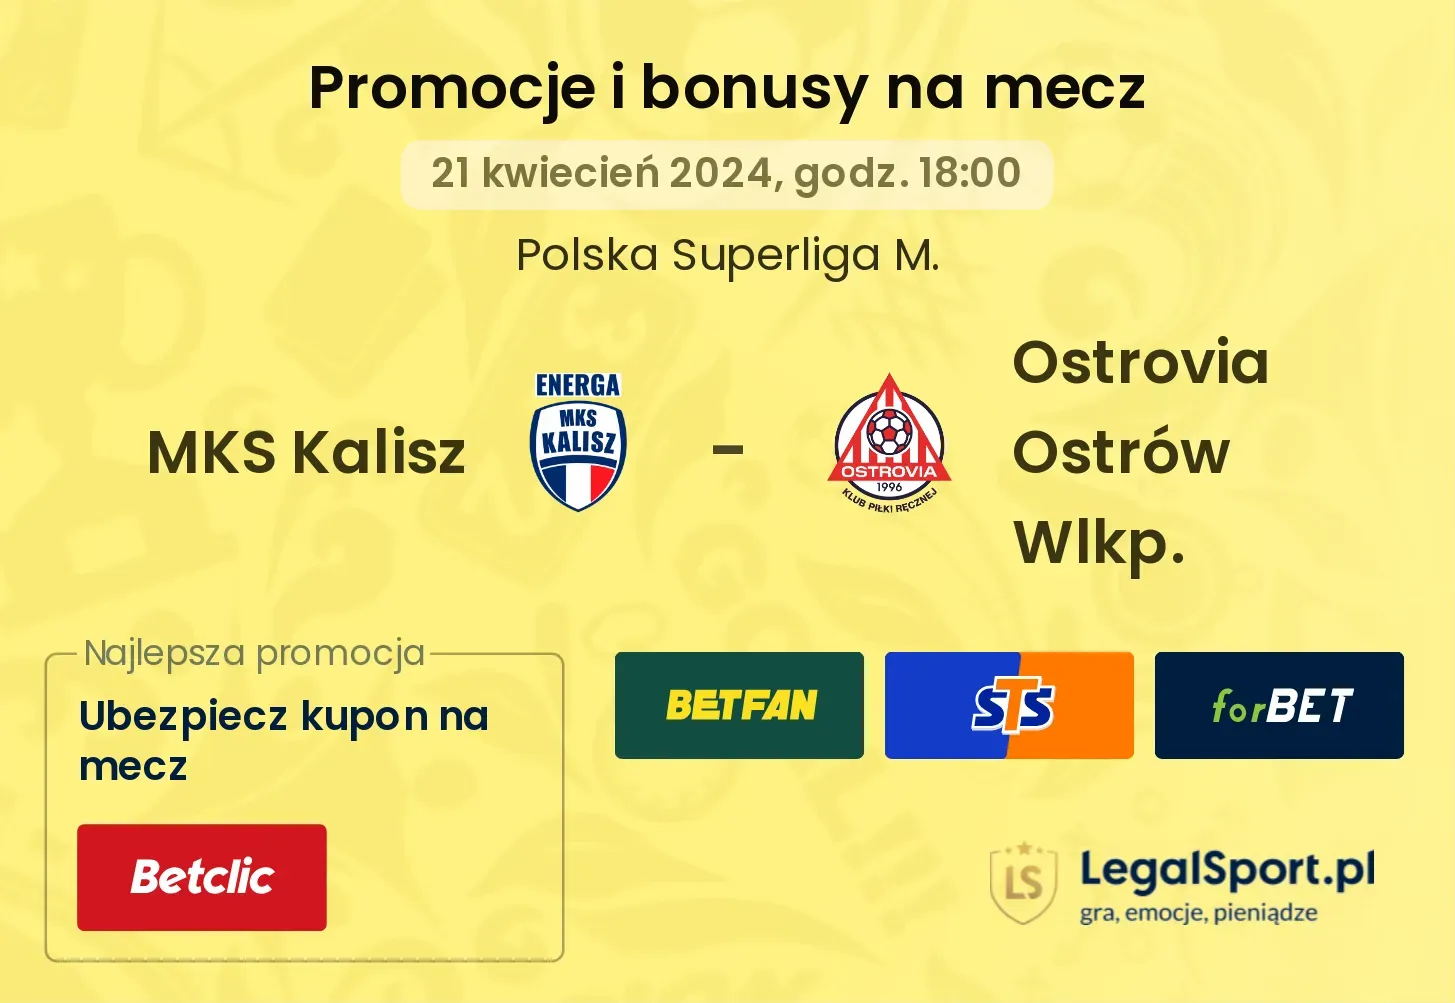 MKS Kalisz - Ostrovia Ostrów Wlkp. promocje bonusy na mecz